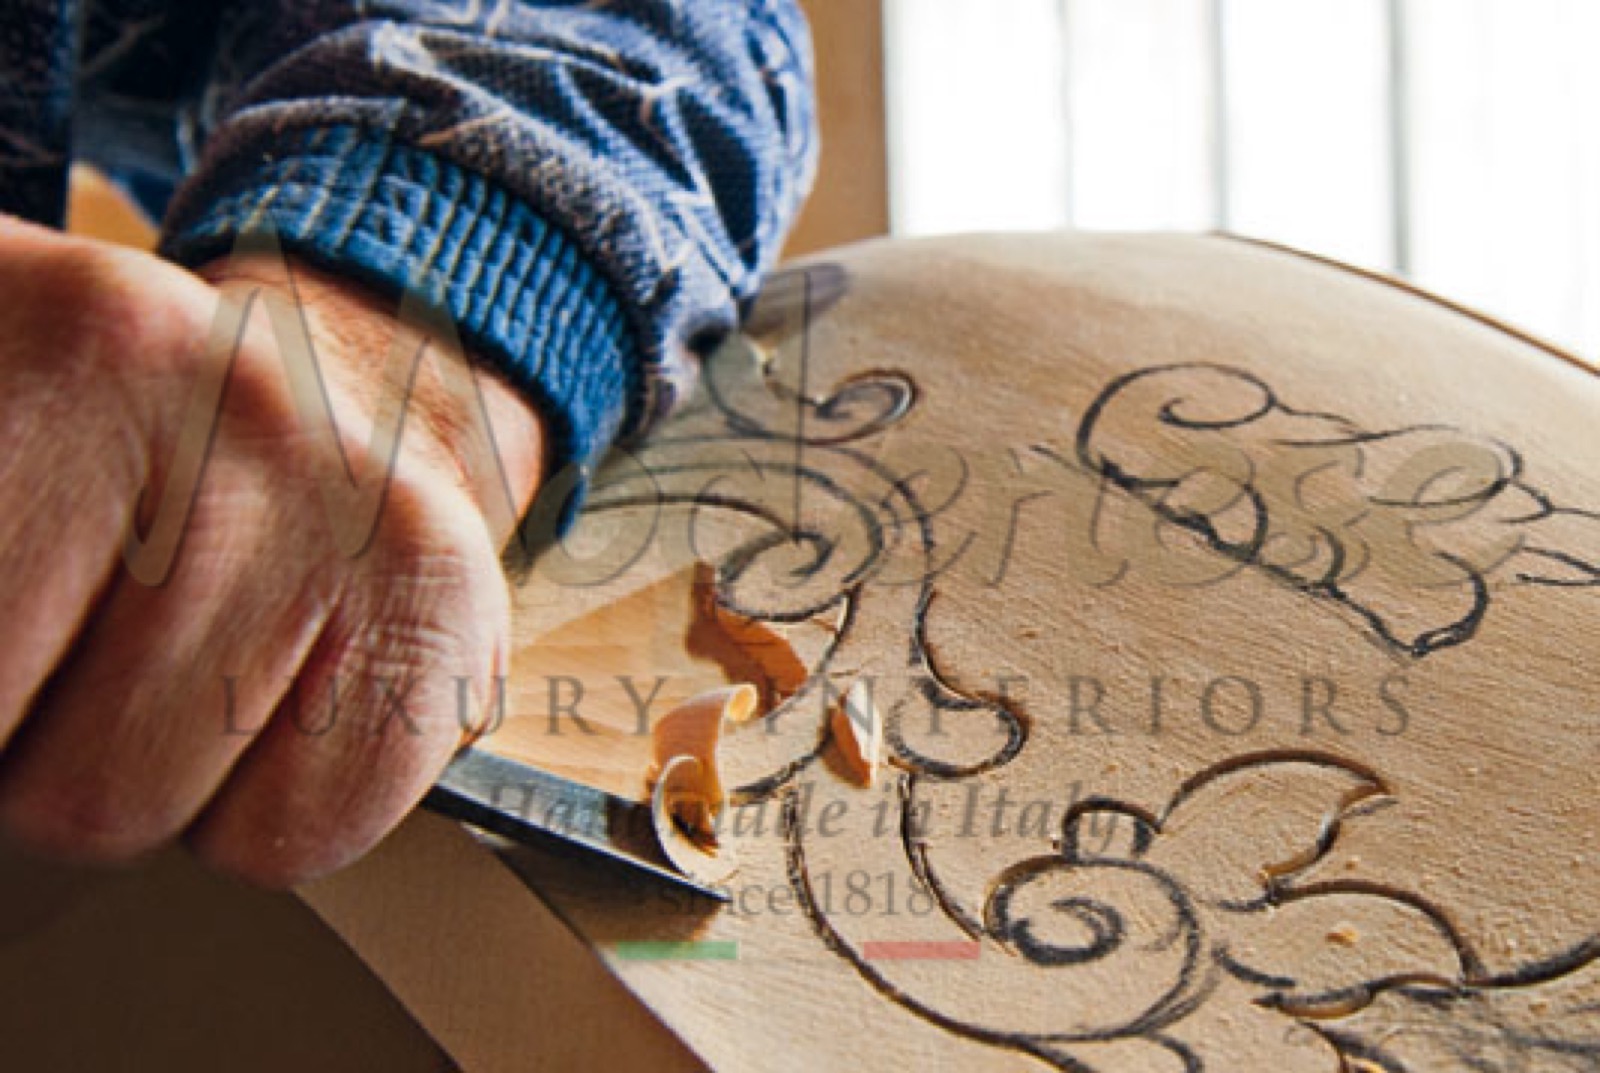 精致风格巴洛克经典豪华家具手工制作室内设计项目实木雕刻木制手工定制艺术品意大利制造手工设计独特的威尼斯雕刻内饰